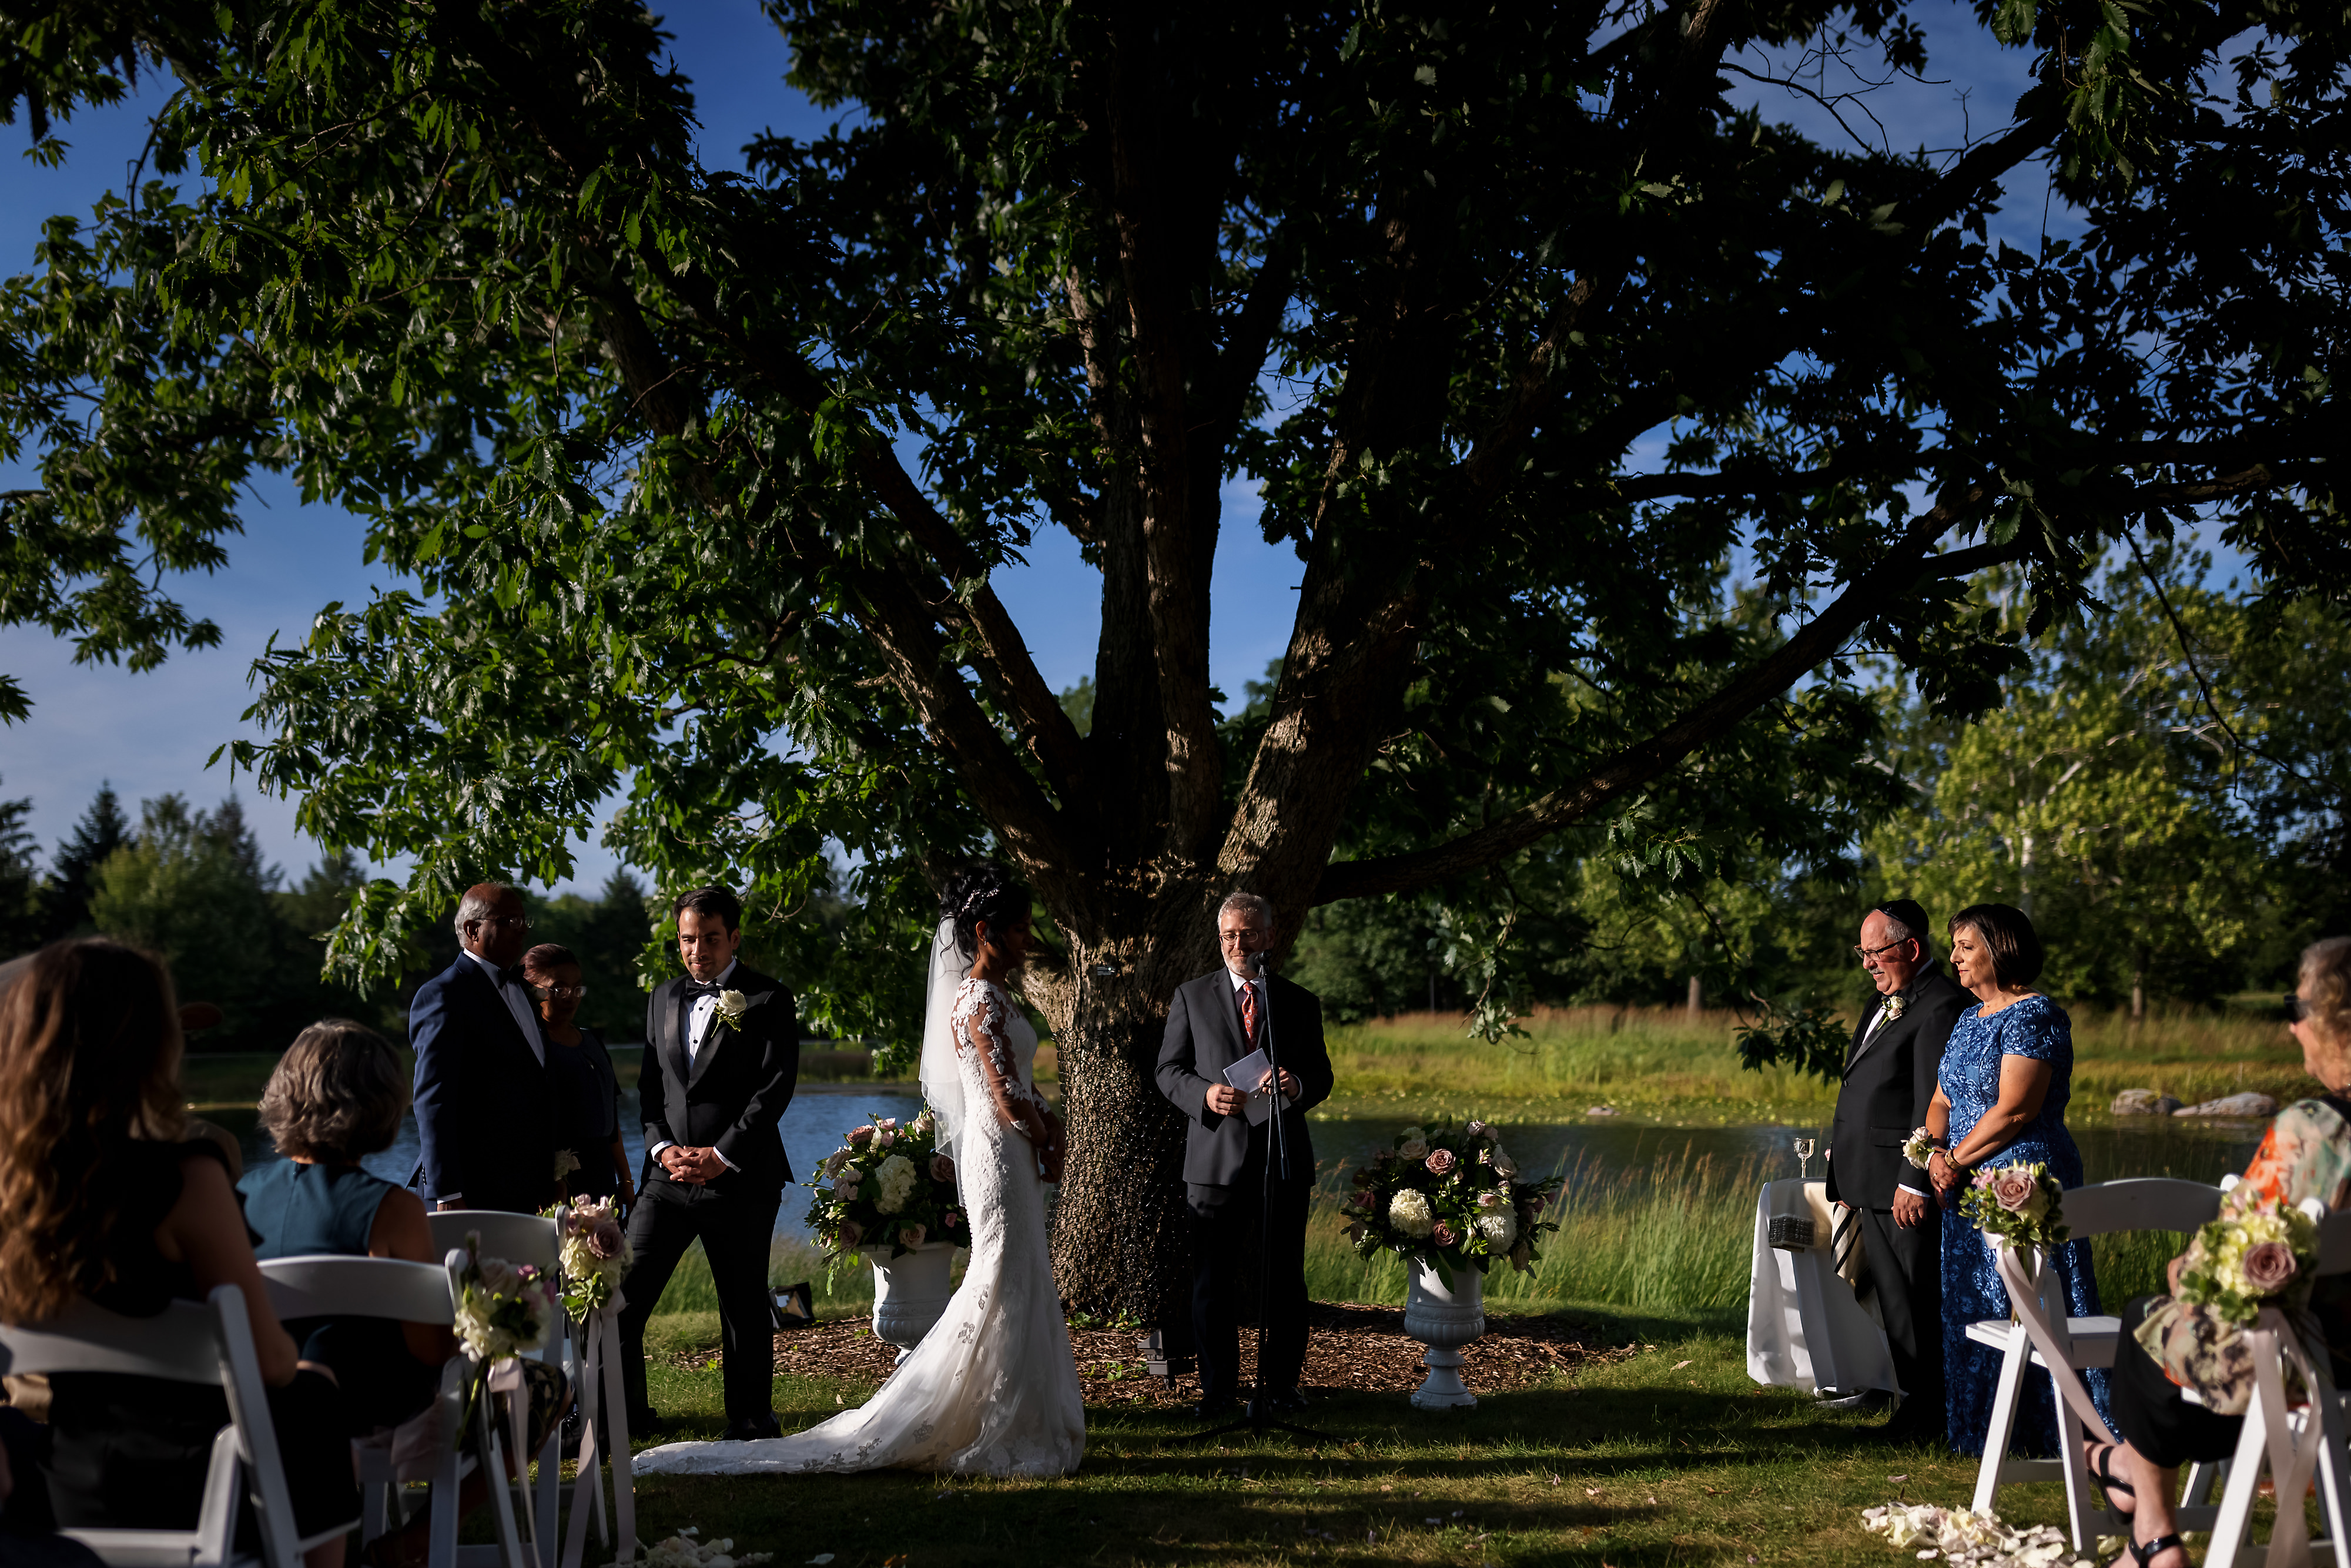 Outdoor wedding ceremony at Morton Arboretum